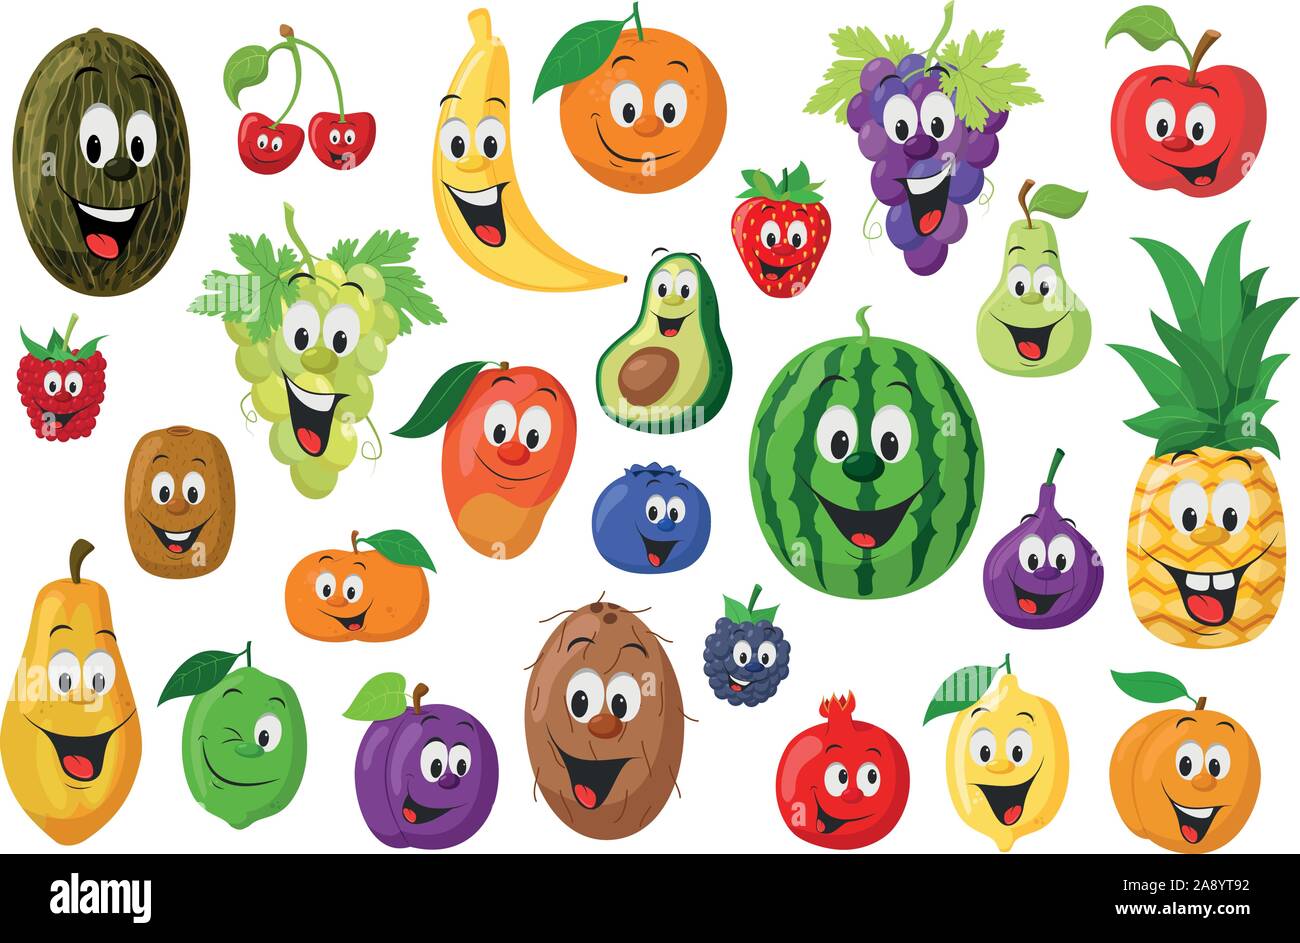 La frutta raccolta di caratteri: Set di 26 diversi tipi di frutta in stile cartoon illustrazione vettoriale Illustrazione Vettoriale